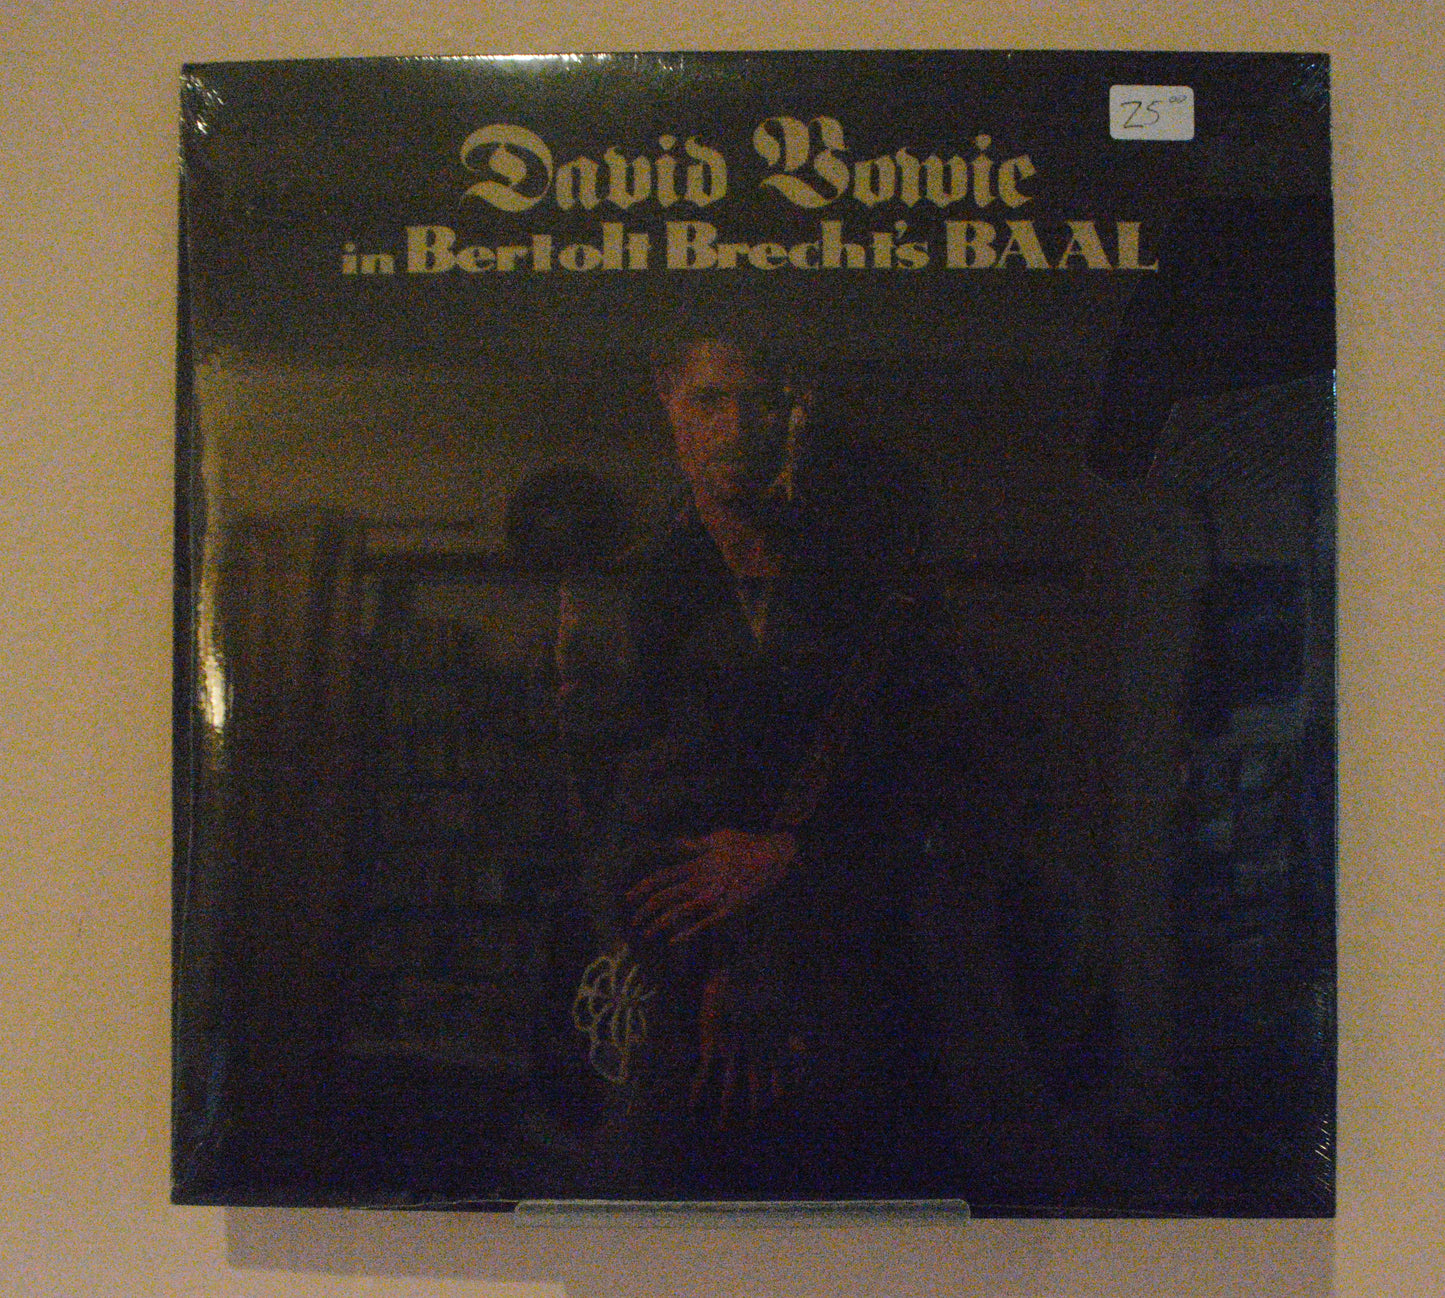 David Bowie - BAAL EP